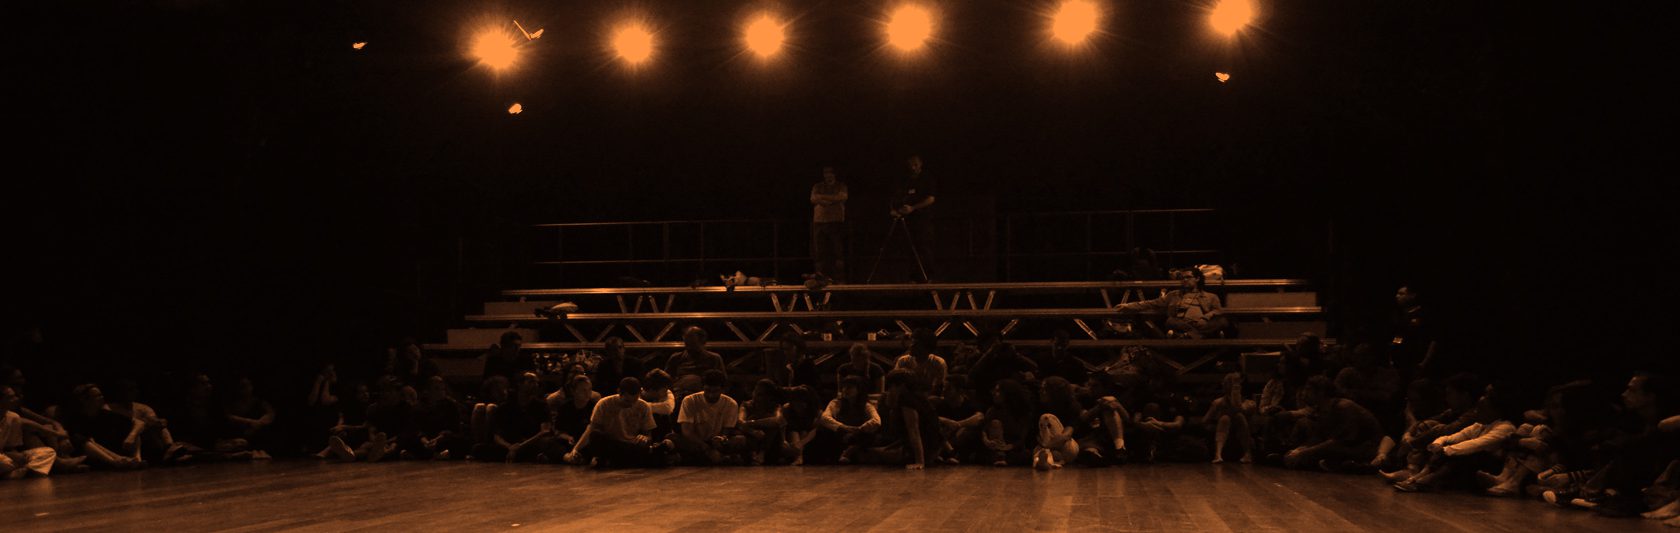 Teatro da USP estimula a experimentação teatral em ação de extensão universitária